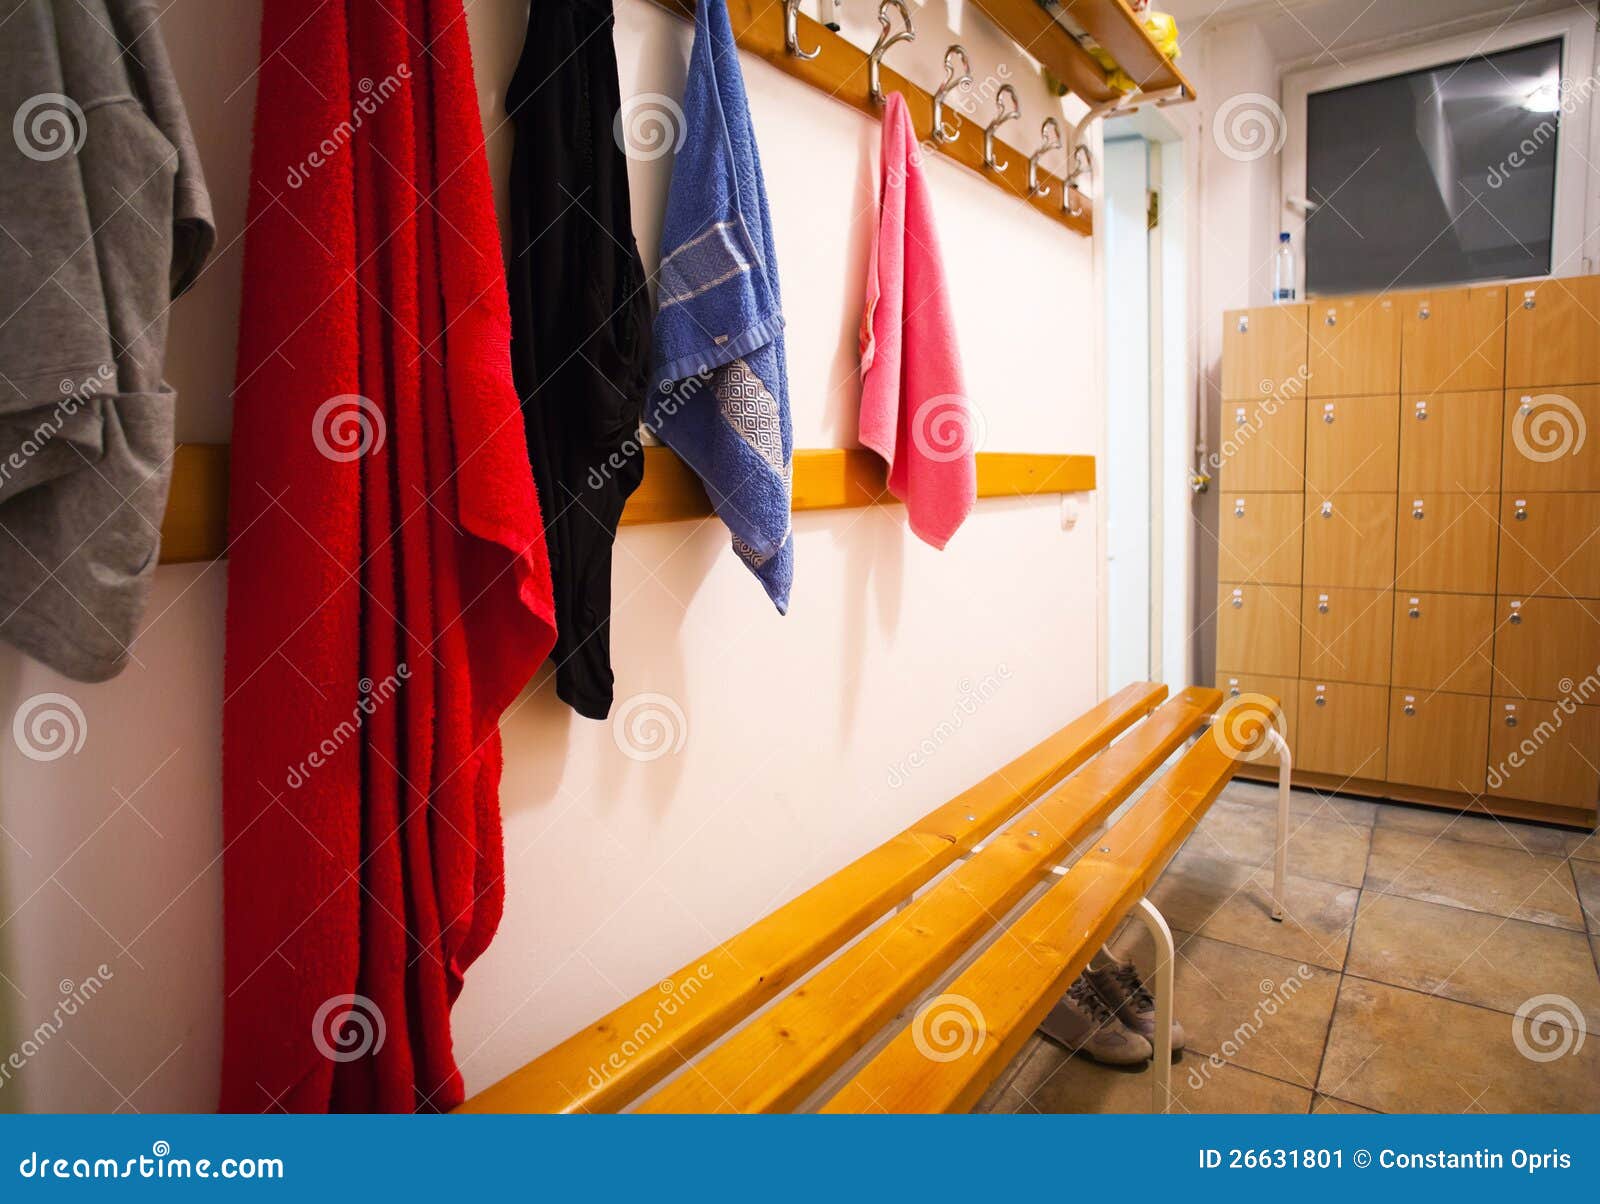 Девушки в мужских раздевалках. The Dressing Room раздевалка. Ванная комната с раздевалками. Интерьеры раздевалок синий цвет. Выдача полотенец возле раздевалок.